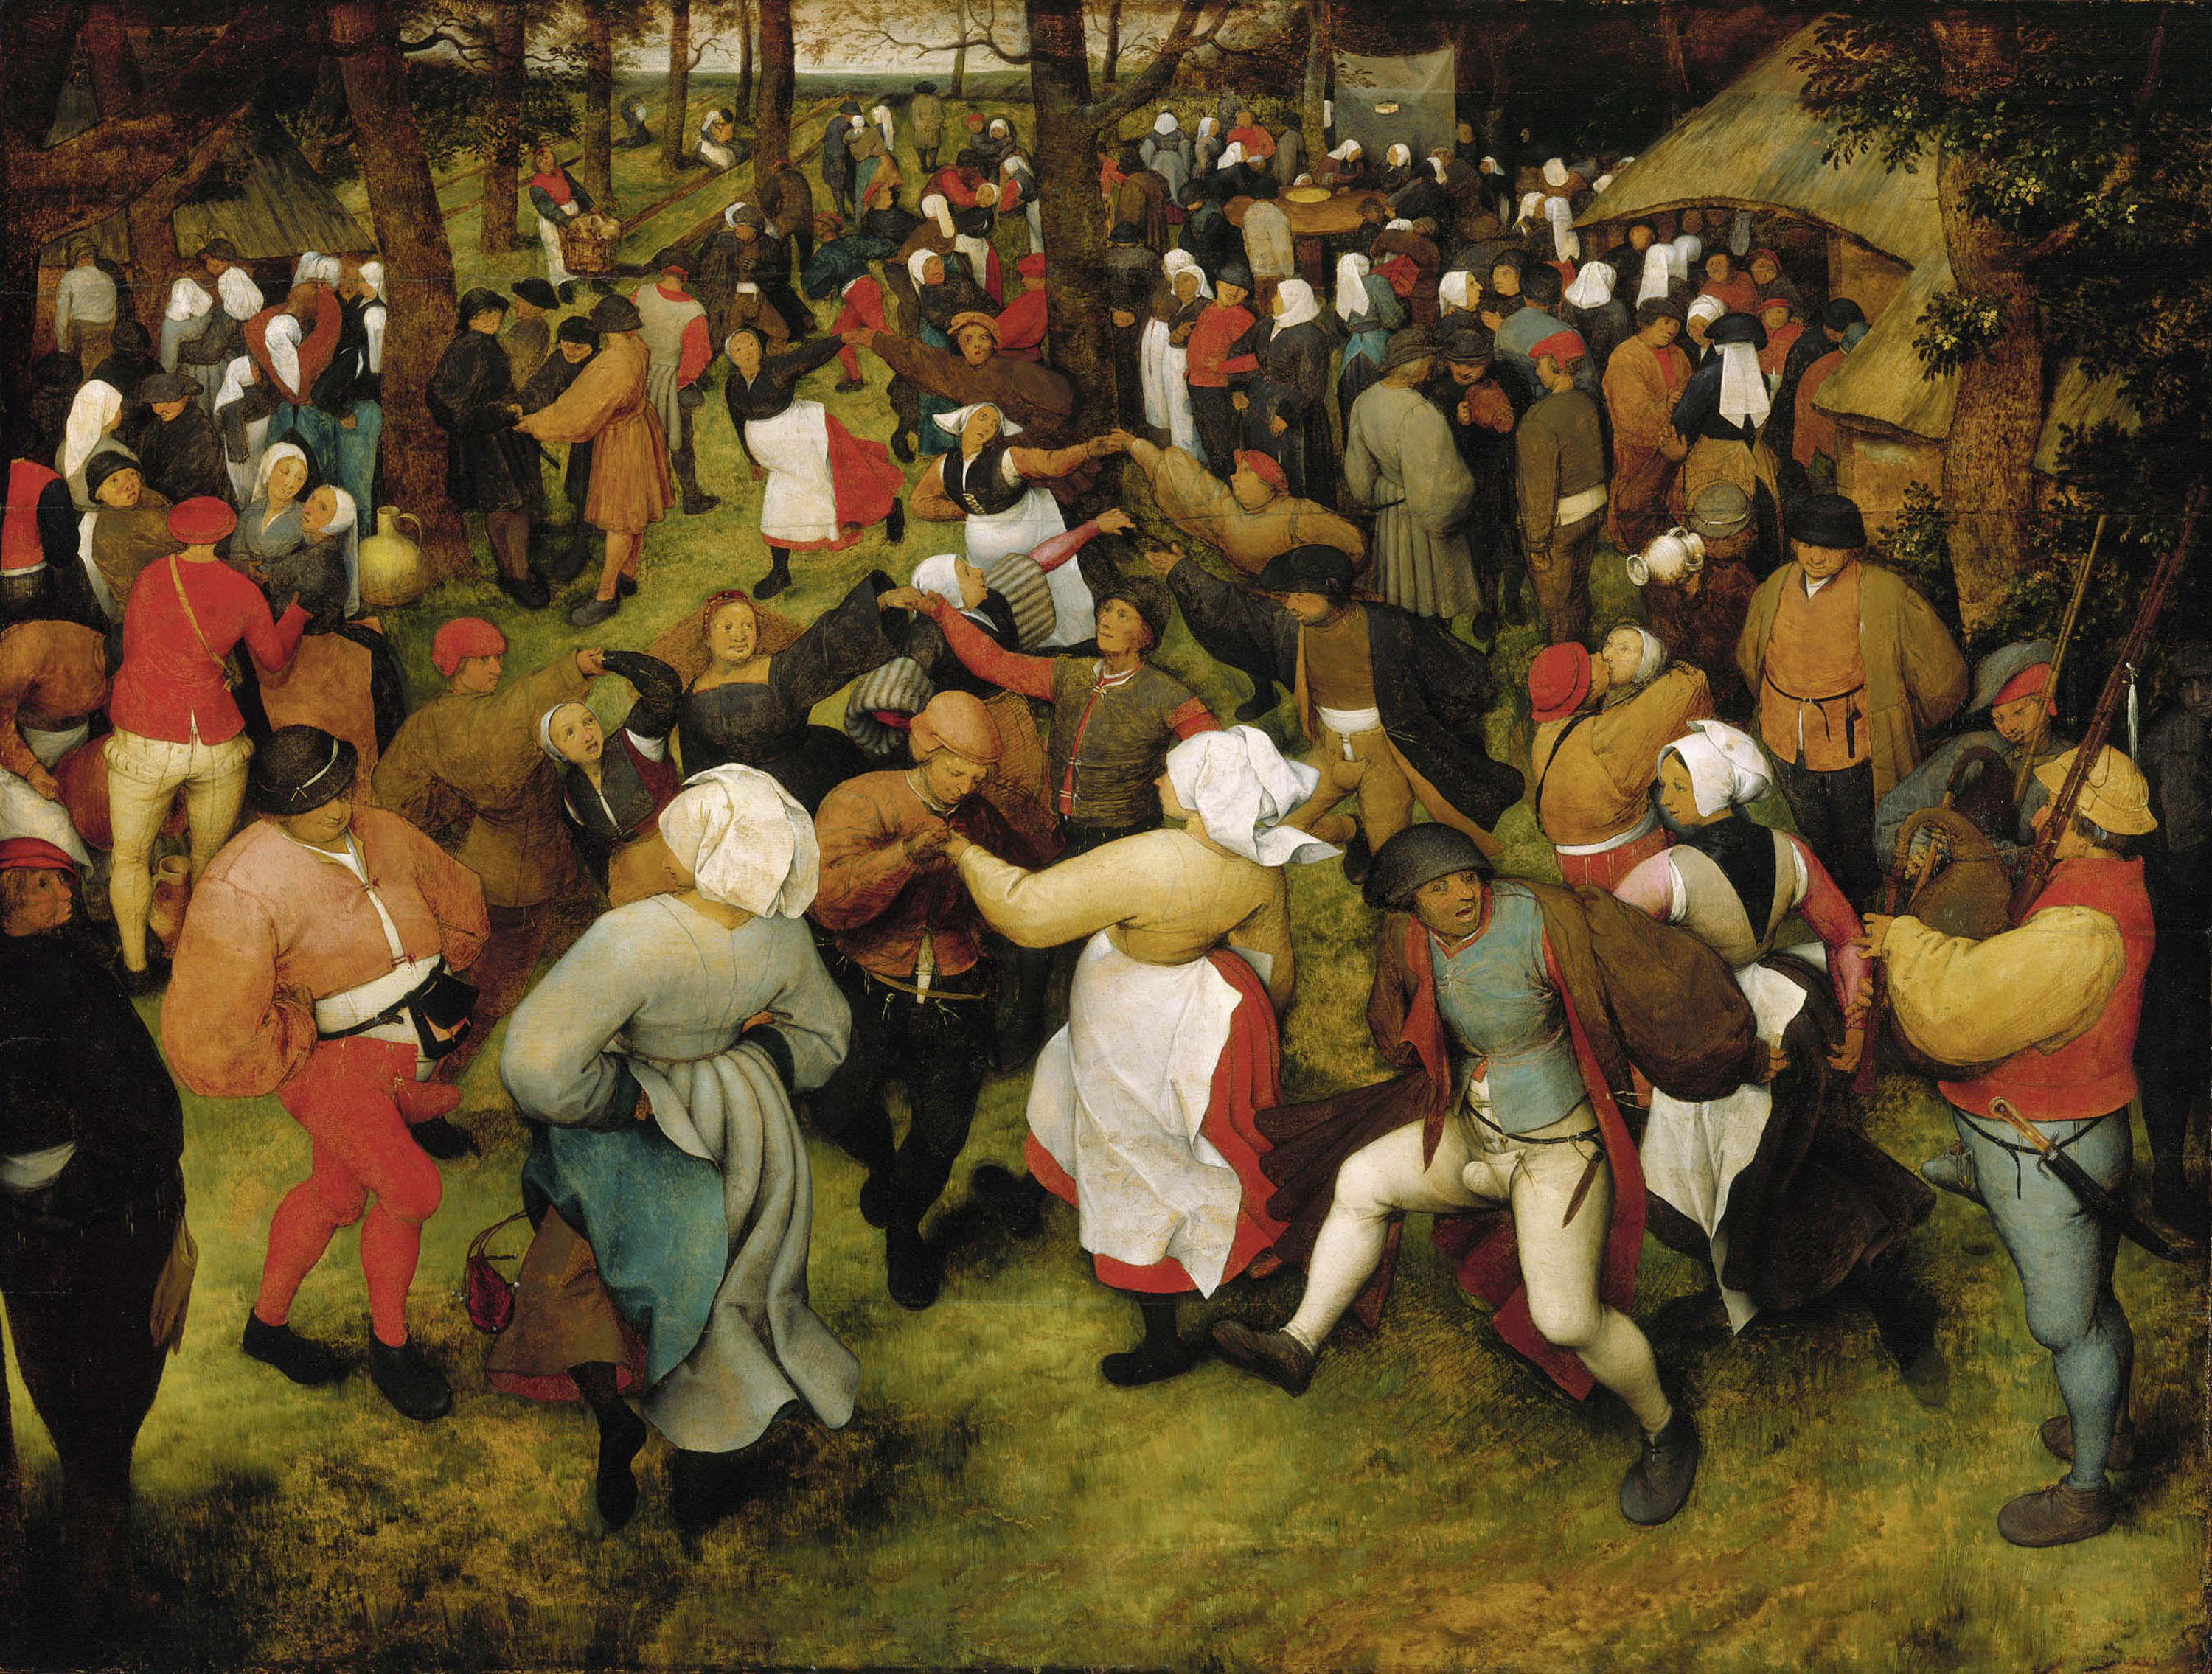 Pieter Bruegel the Elder - Wedding Dance in the Open Air - WGA03505